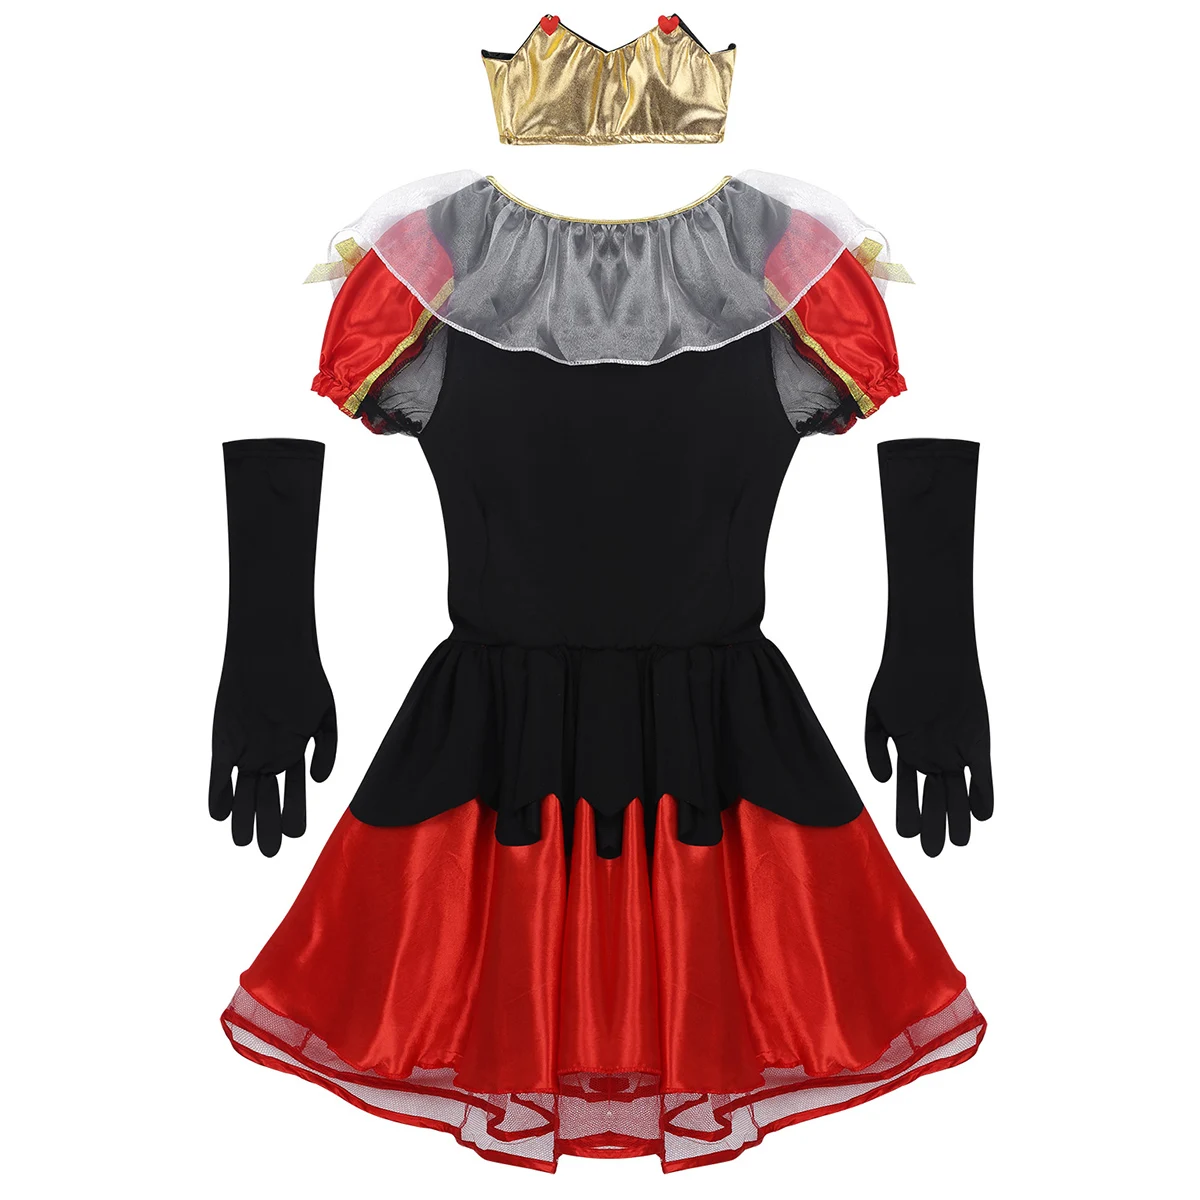 Женский костюм для взрослых королевской королевы из 3 предметов, костюм для Хэллоуин, короткий Пышный рукав, три блестящих сердца, вечерние платья с короной и перчатки